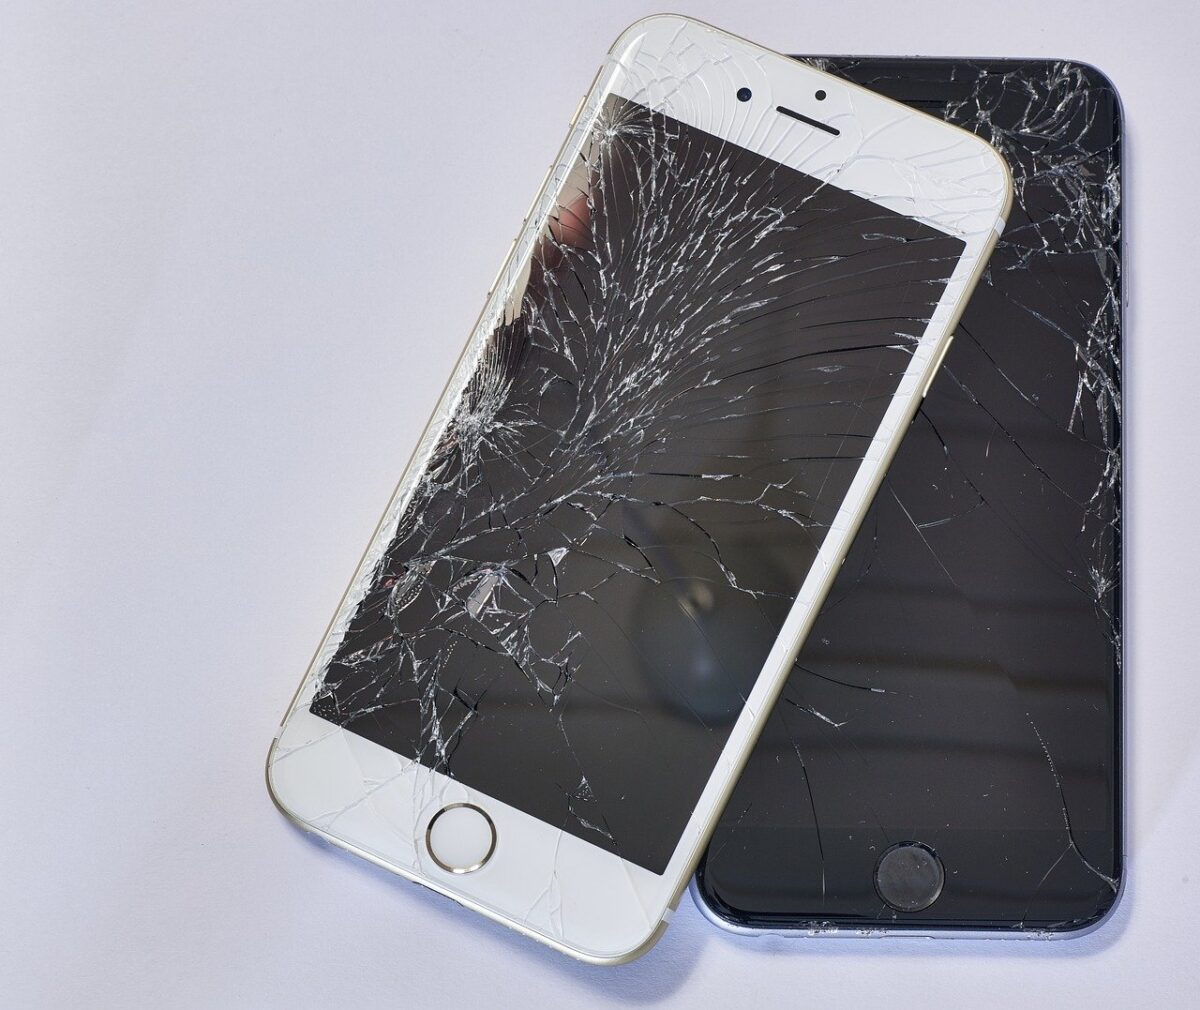 iphone repair, mobile mishaps and repairing tips